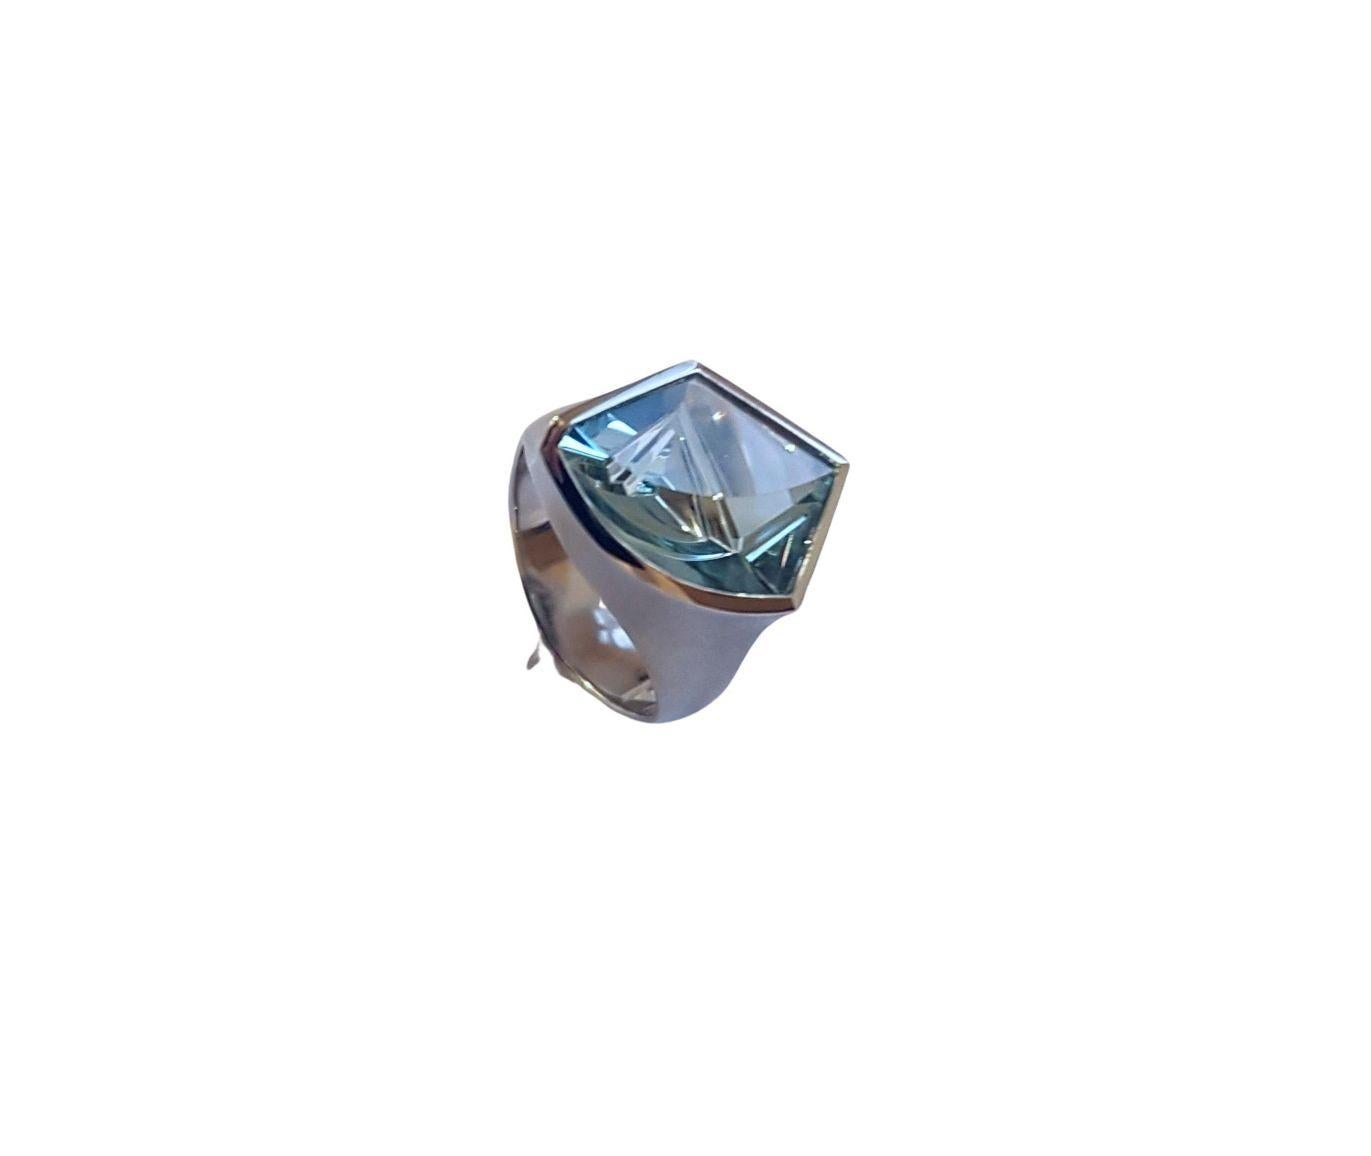 4.74 Carat Aquamarine Platinum Ring by Atelier Munsteiner 2